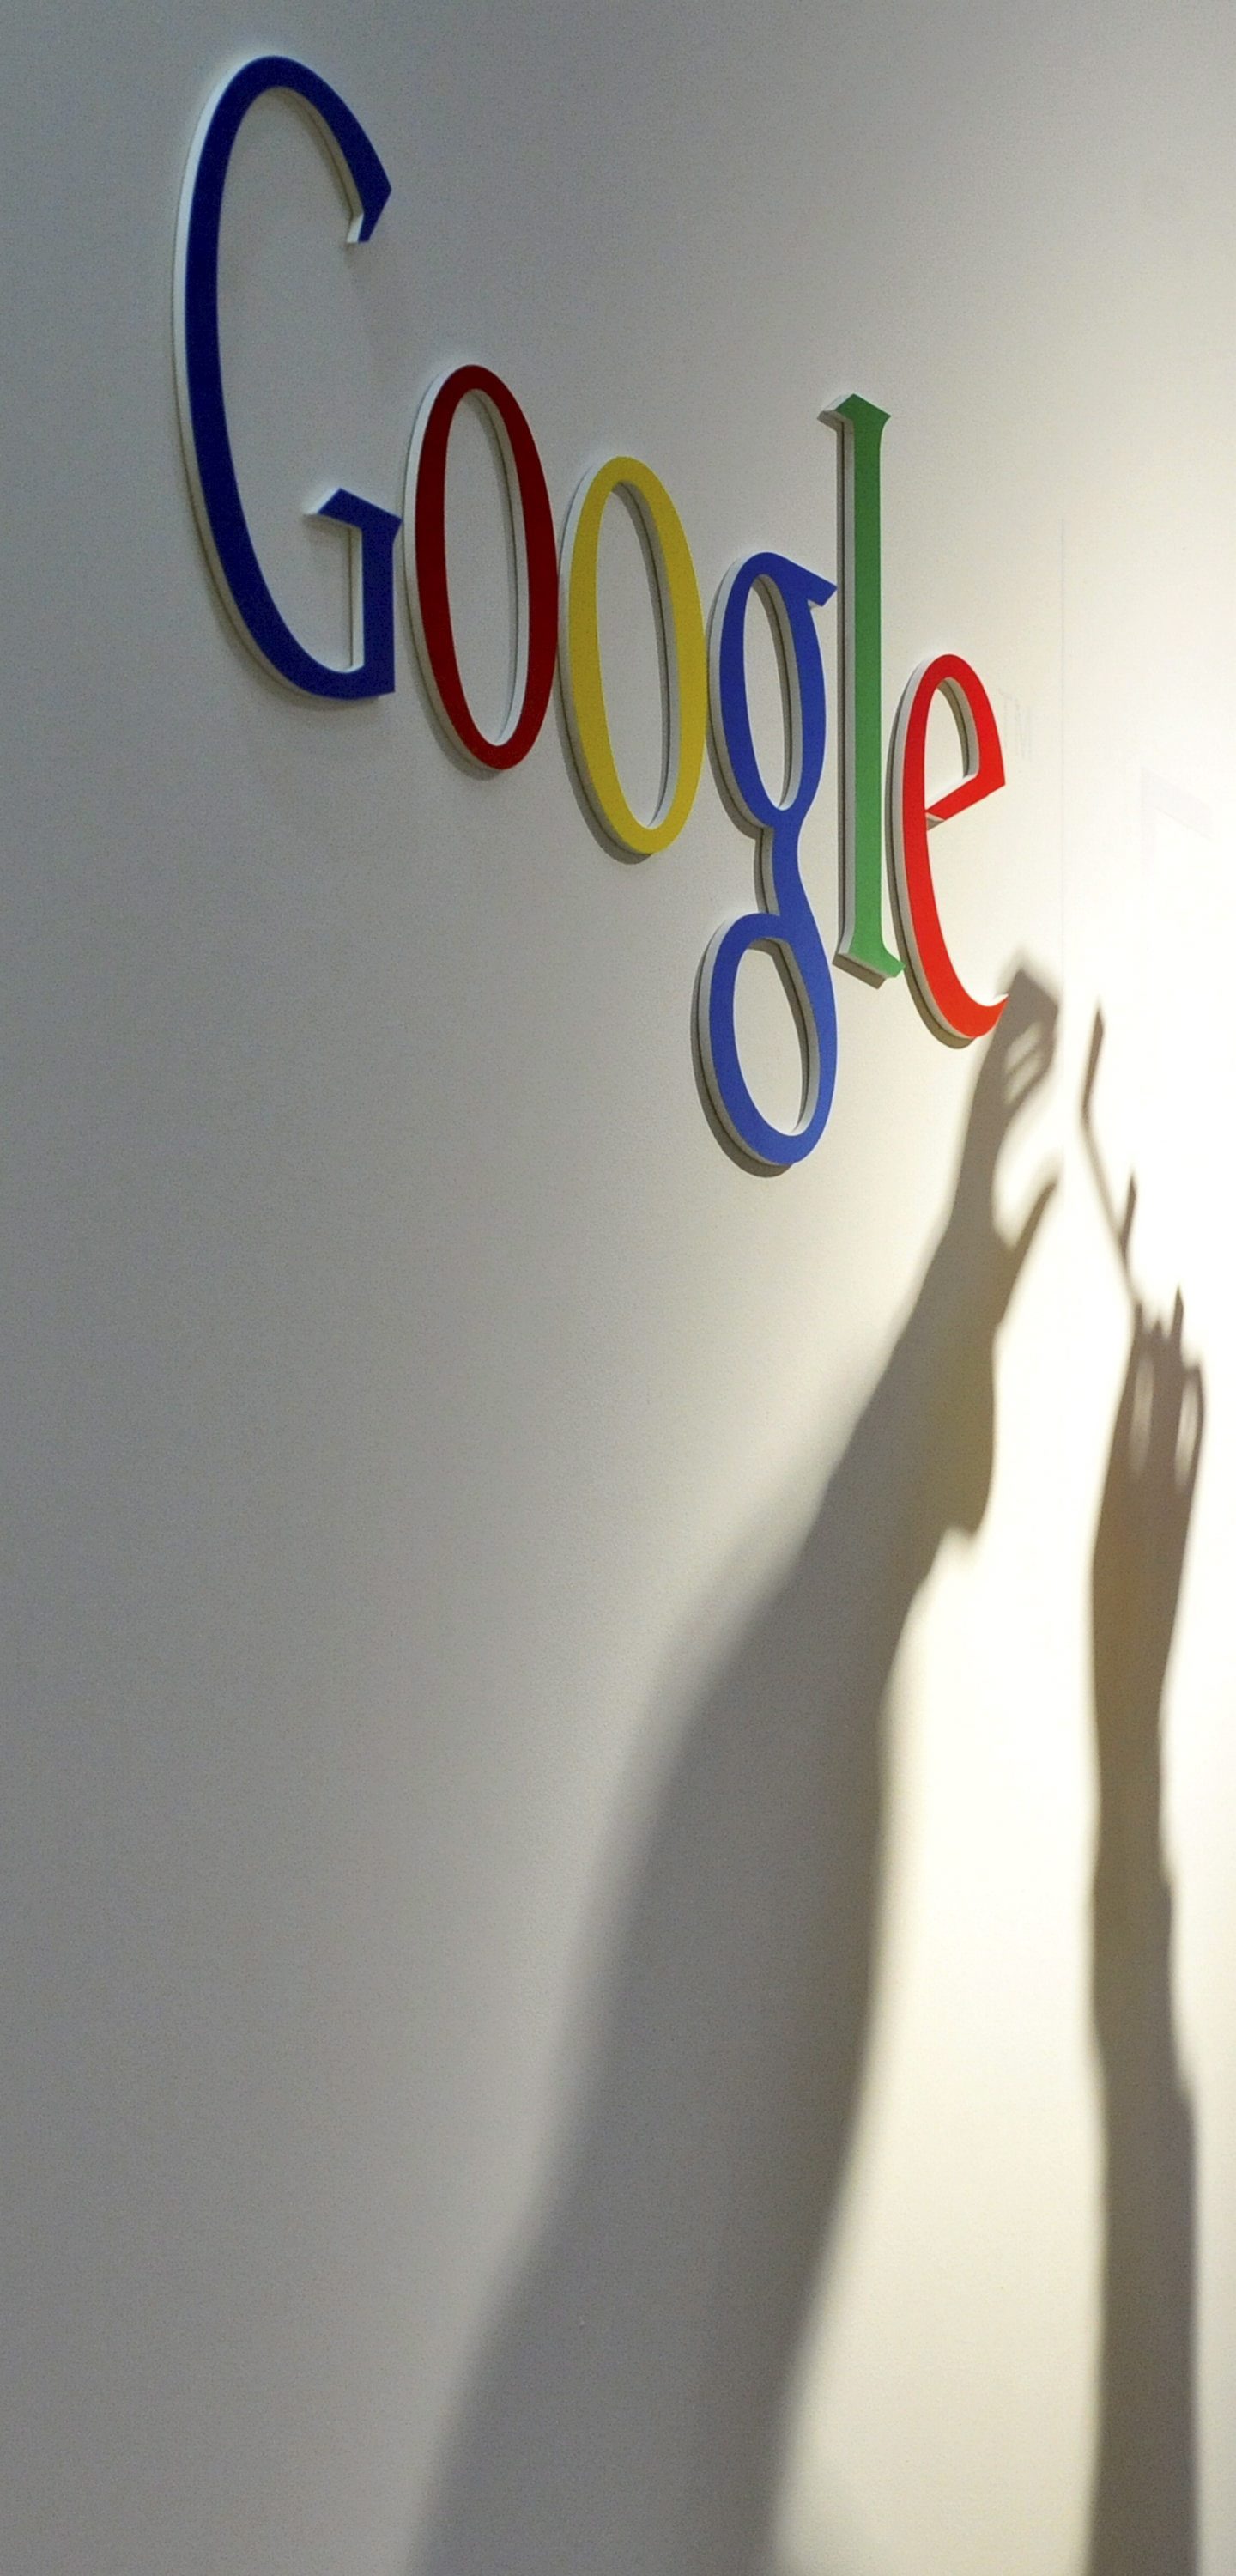 Сегашните правила блокират конкурентни разработки, смятат от Google